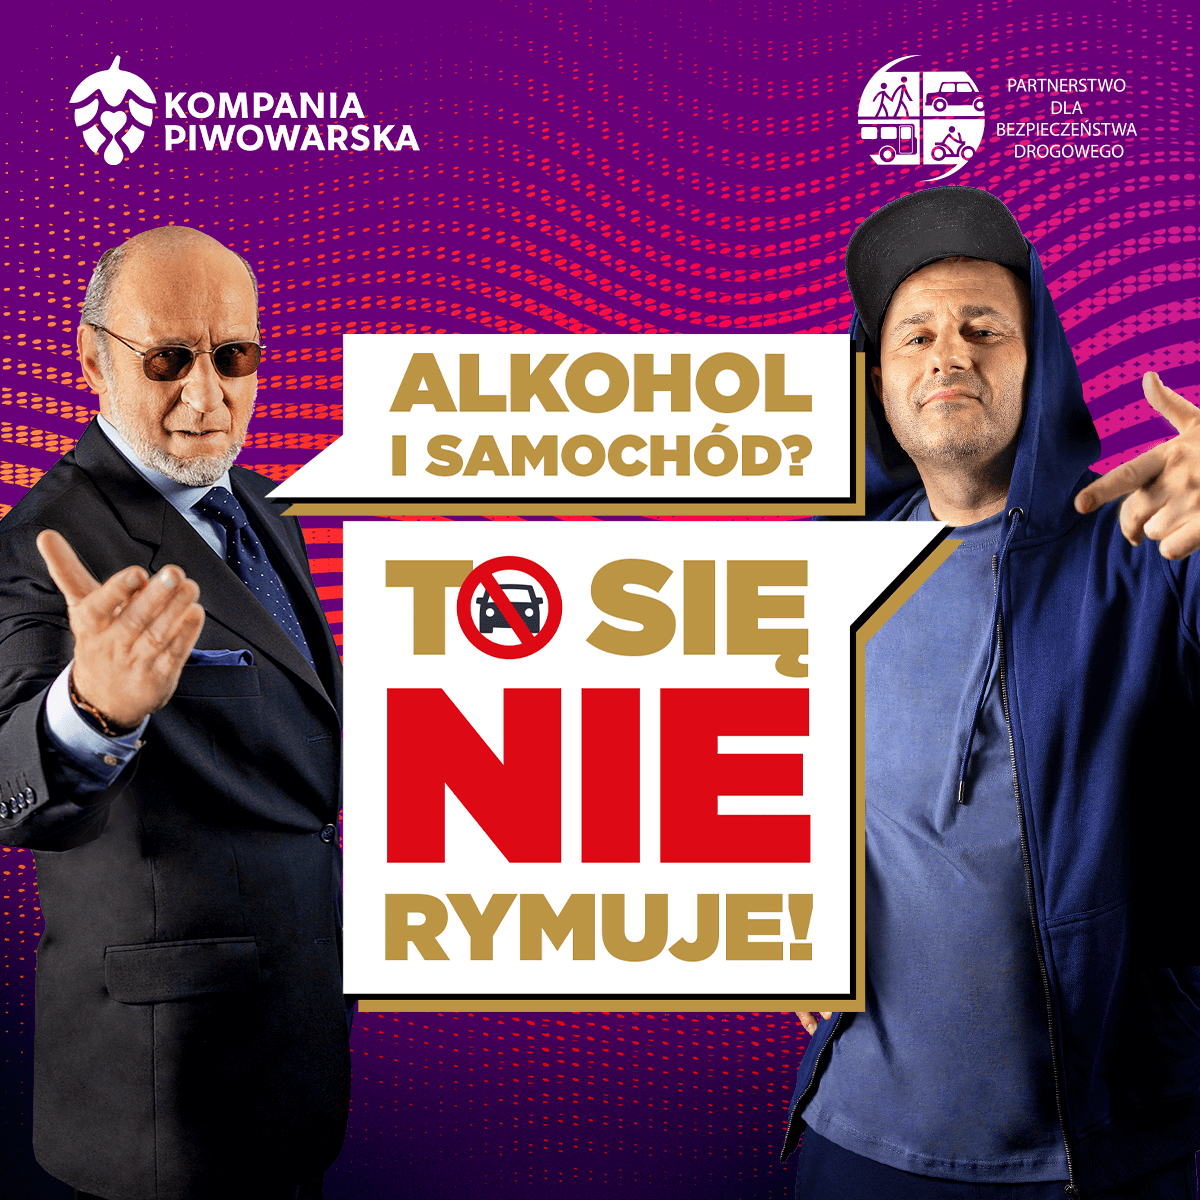 „Alkohol i samochód – to się nie rymuje” – rusza muzyczna kampania społeczna Kompanii Piwowarskiej z udziałem Piotra Fronczewskiego i PIHa